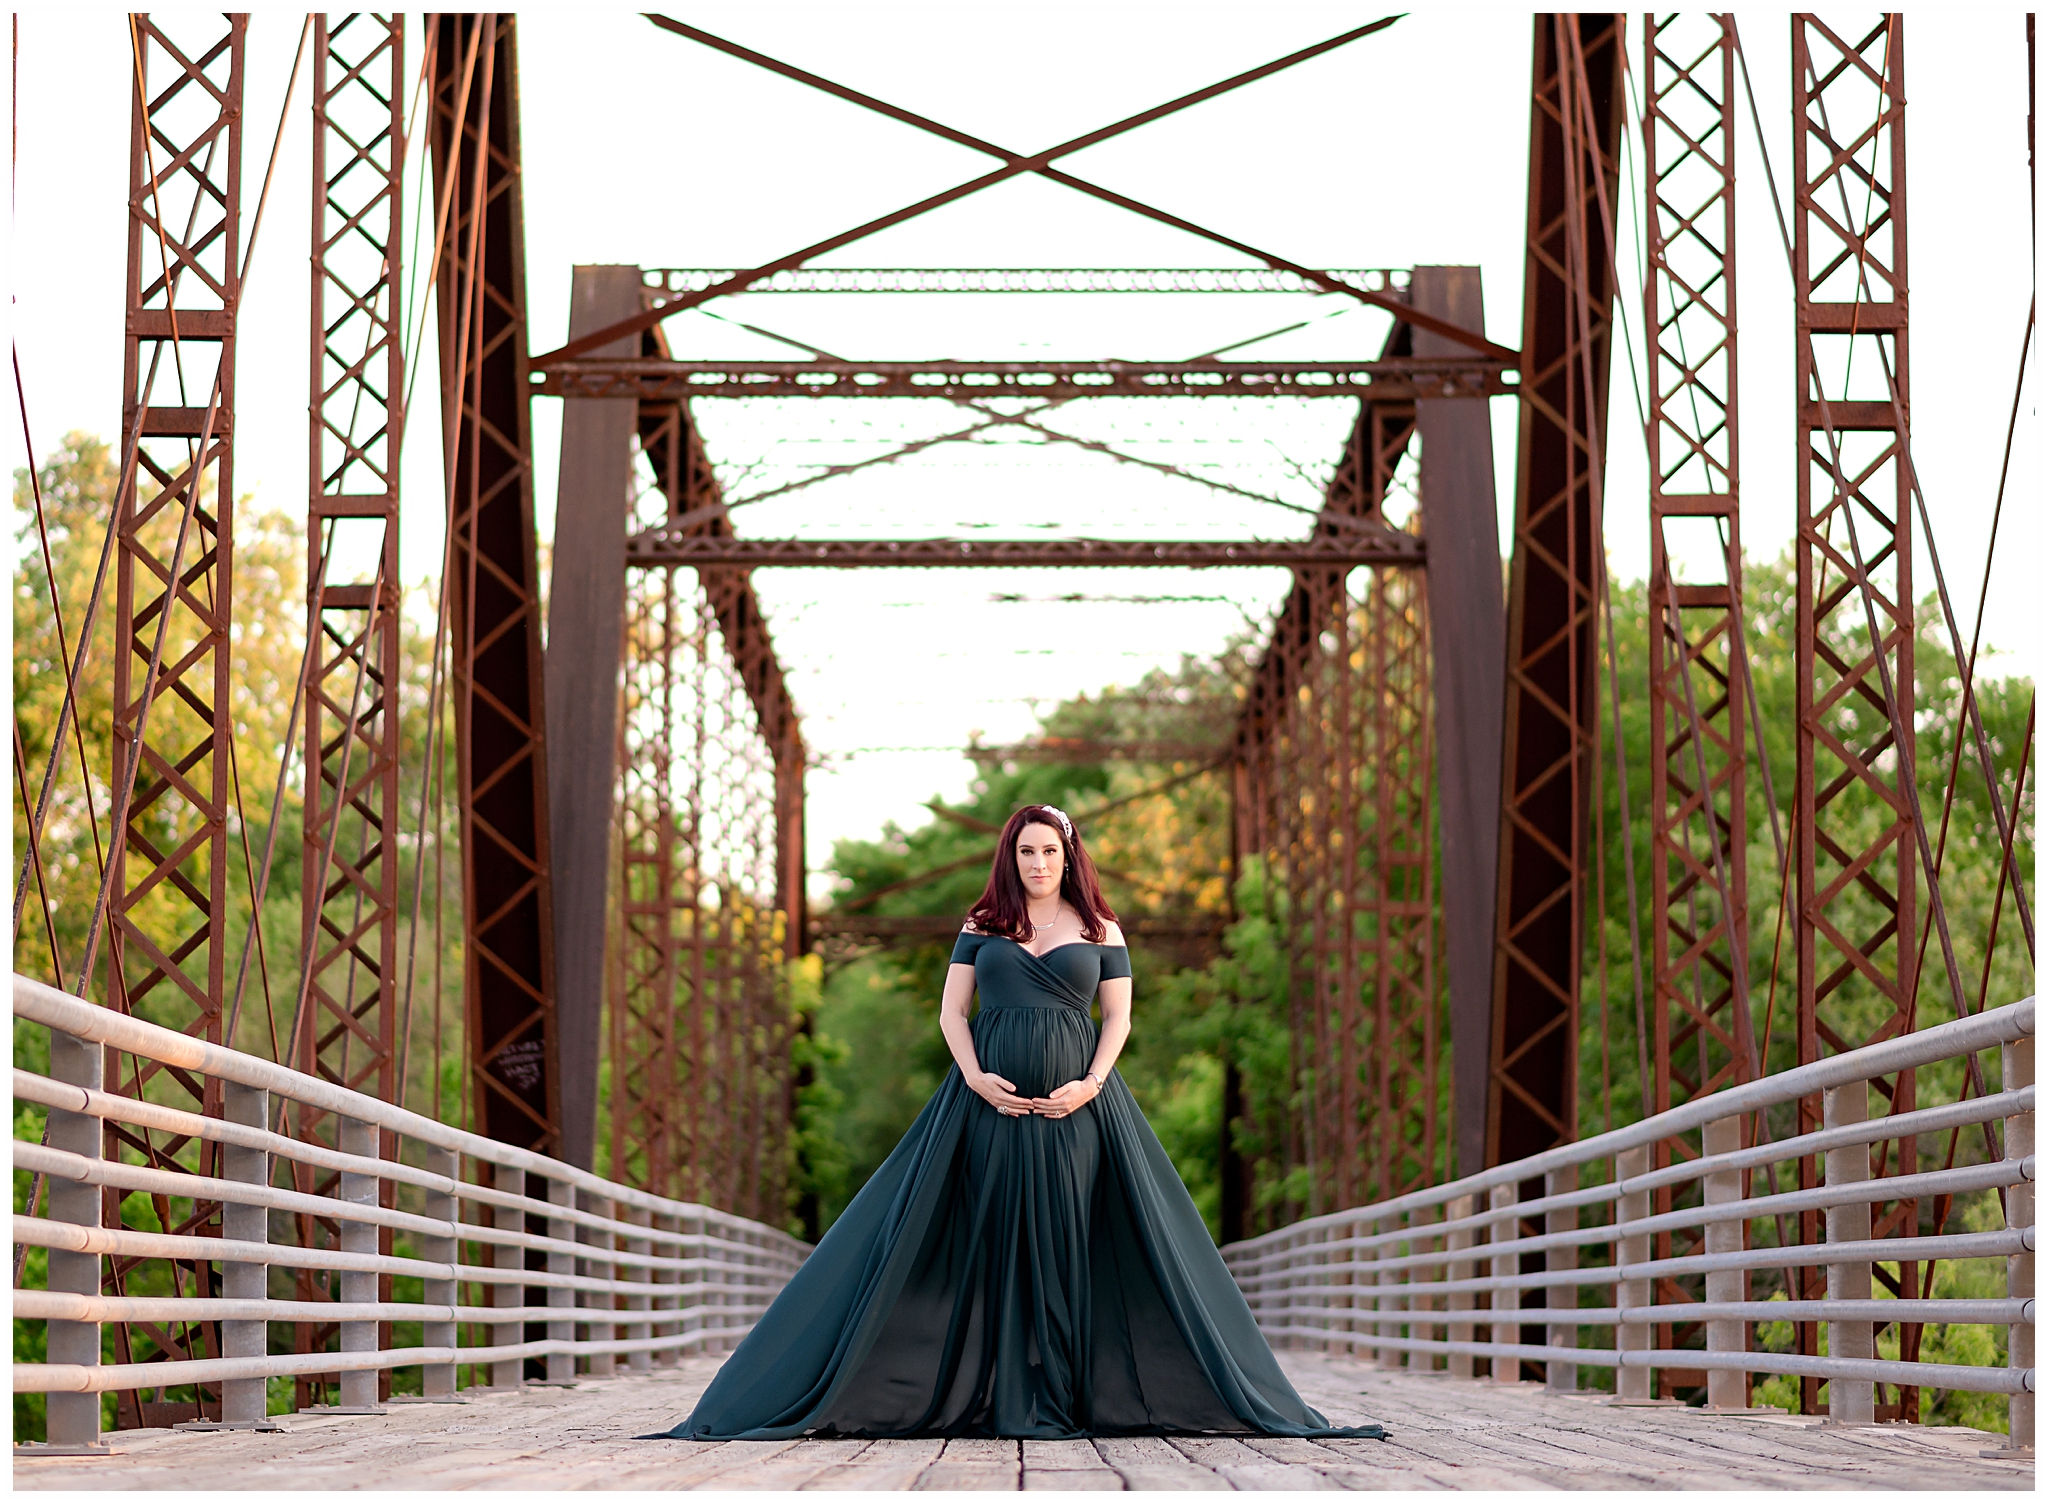 pregnant woman green gown bridge